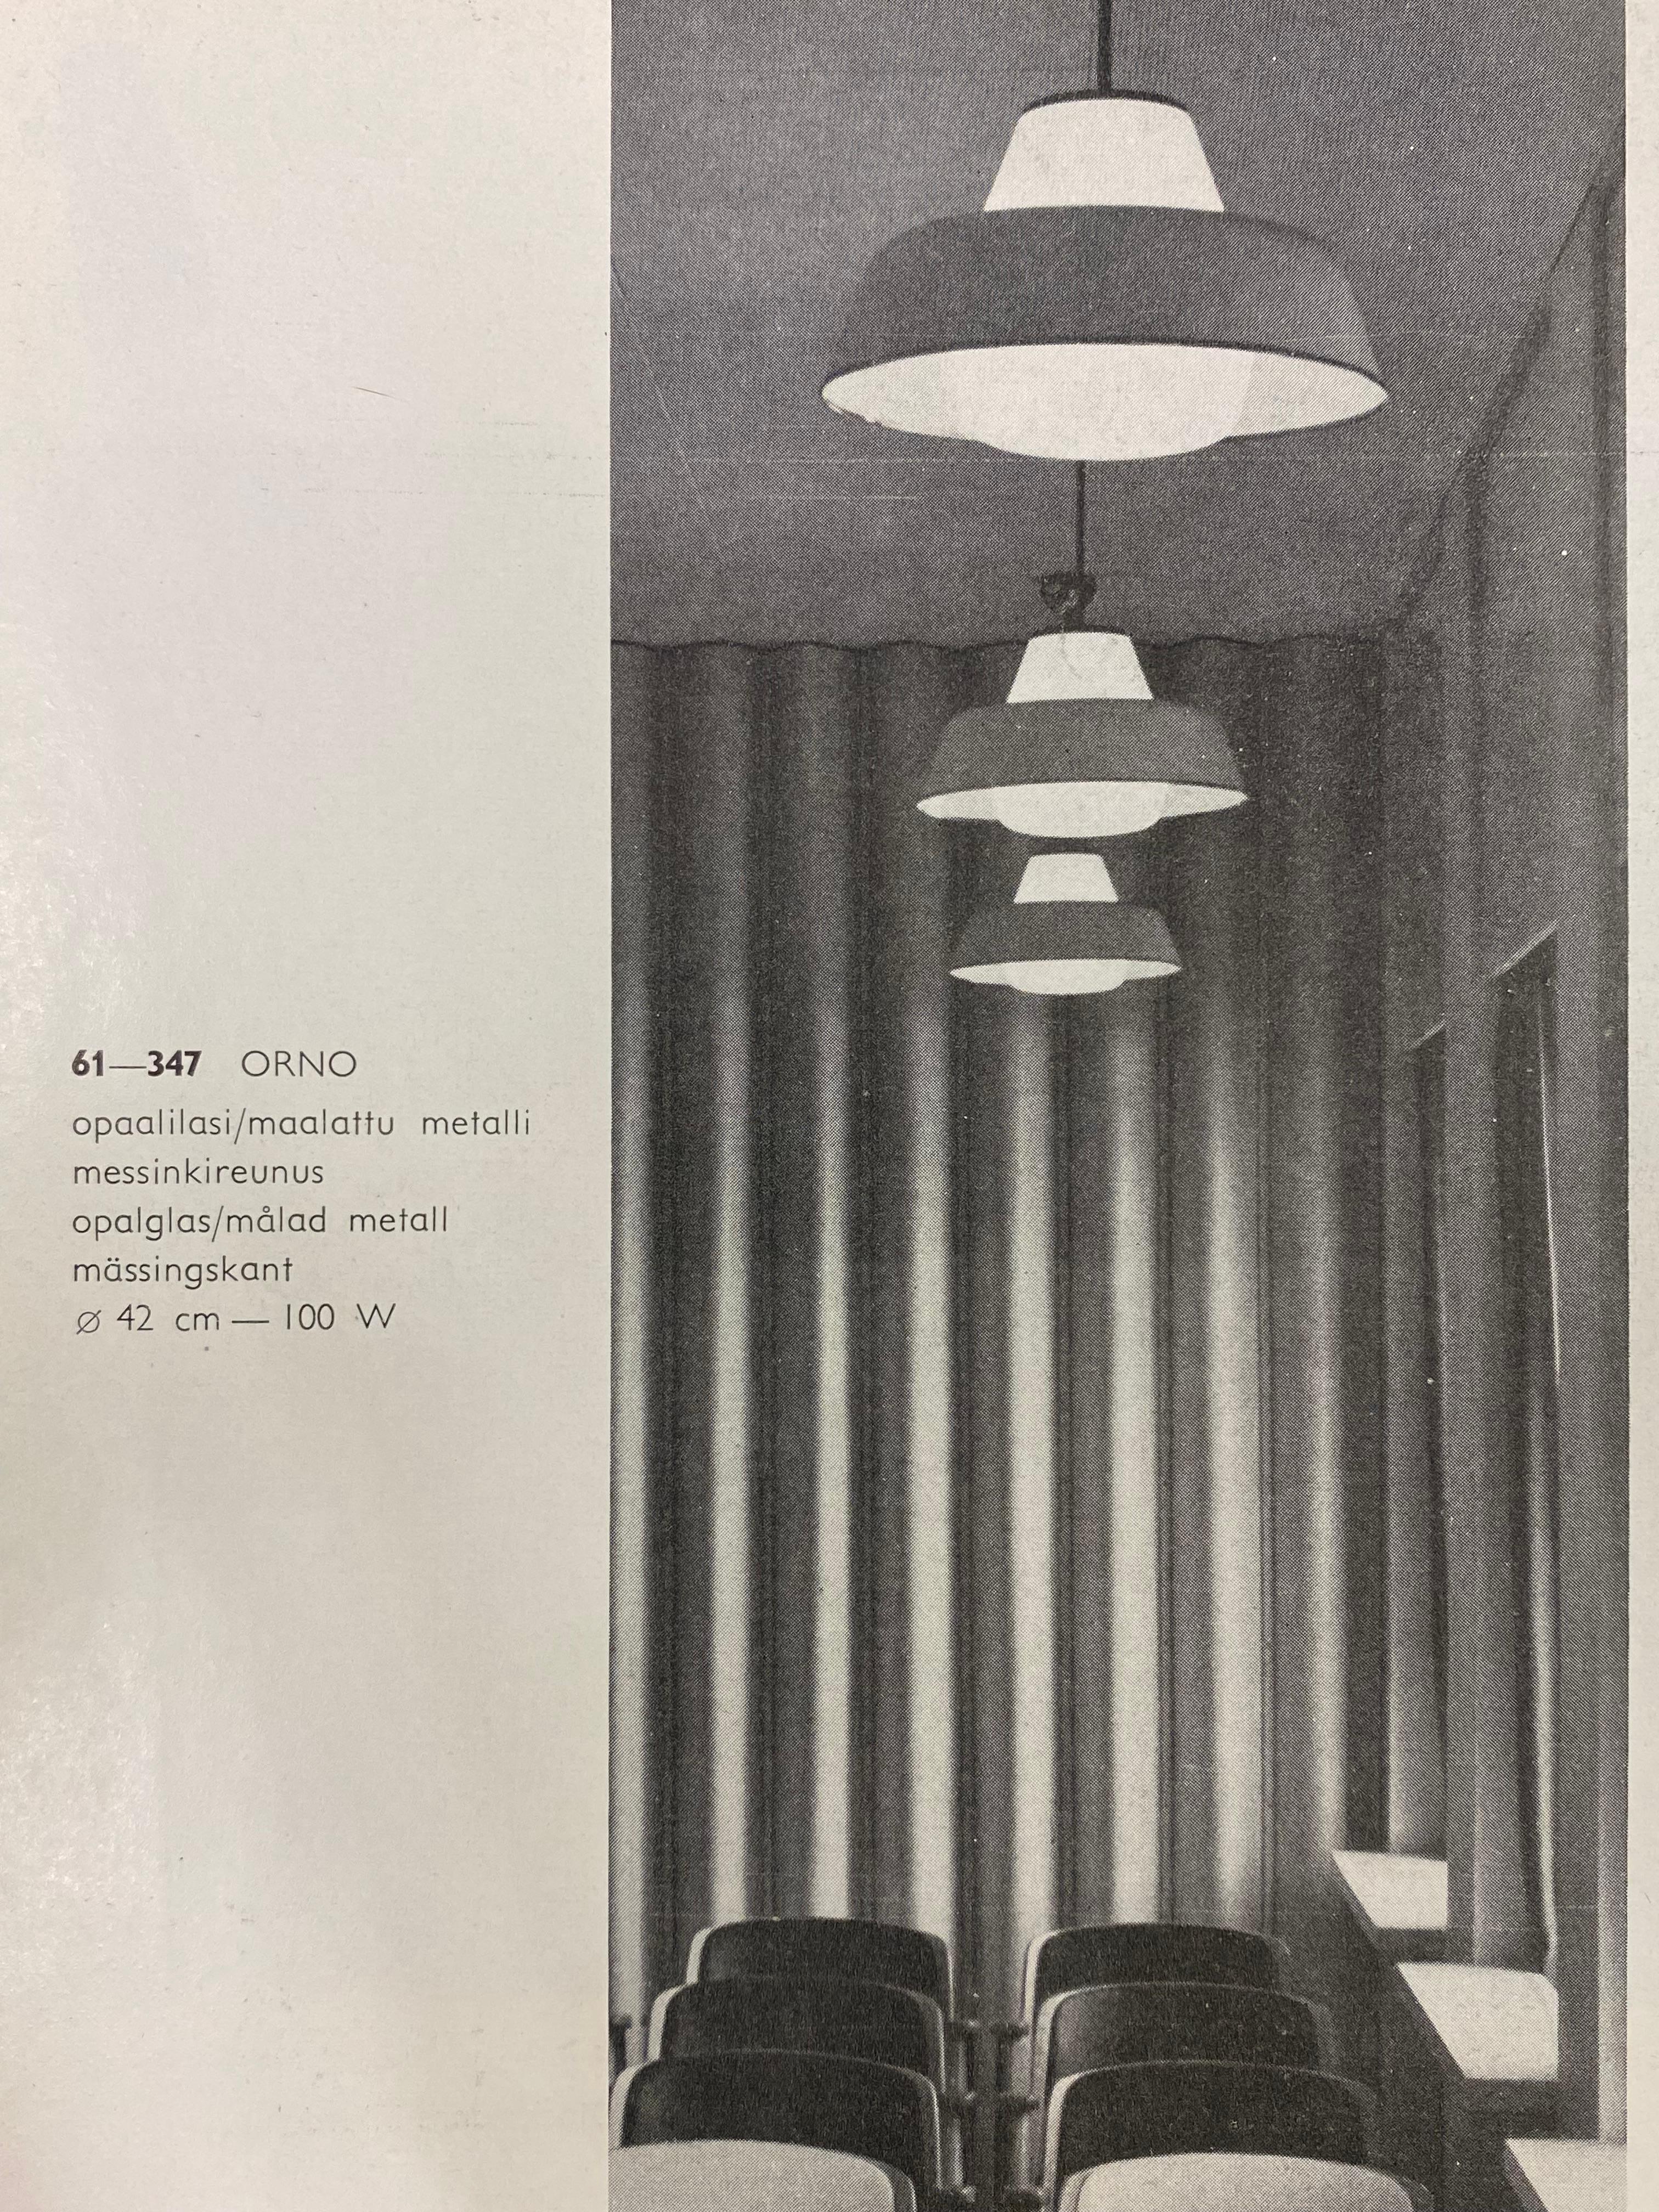 Pair Of Lisa Johansson-Papé Ceiling Pendants Model. 61-347, Orno 1950s For Sale 7